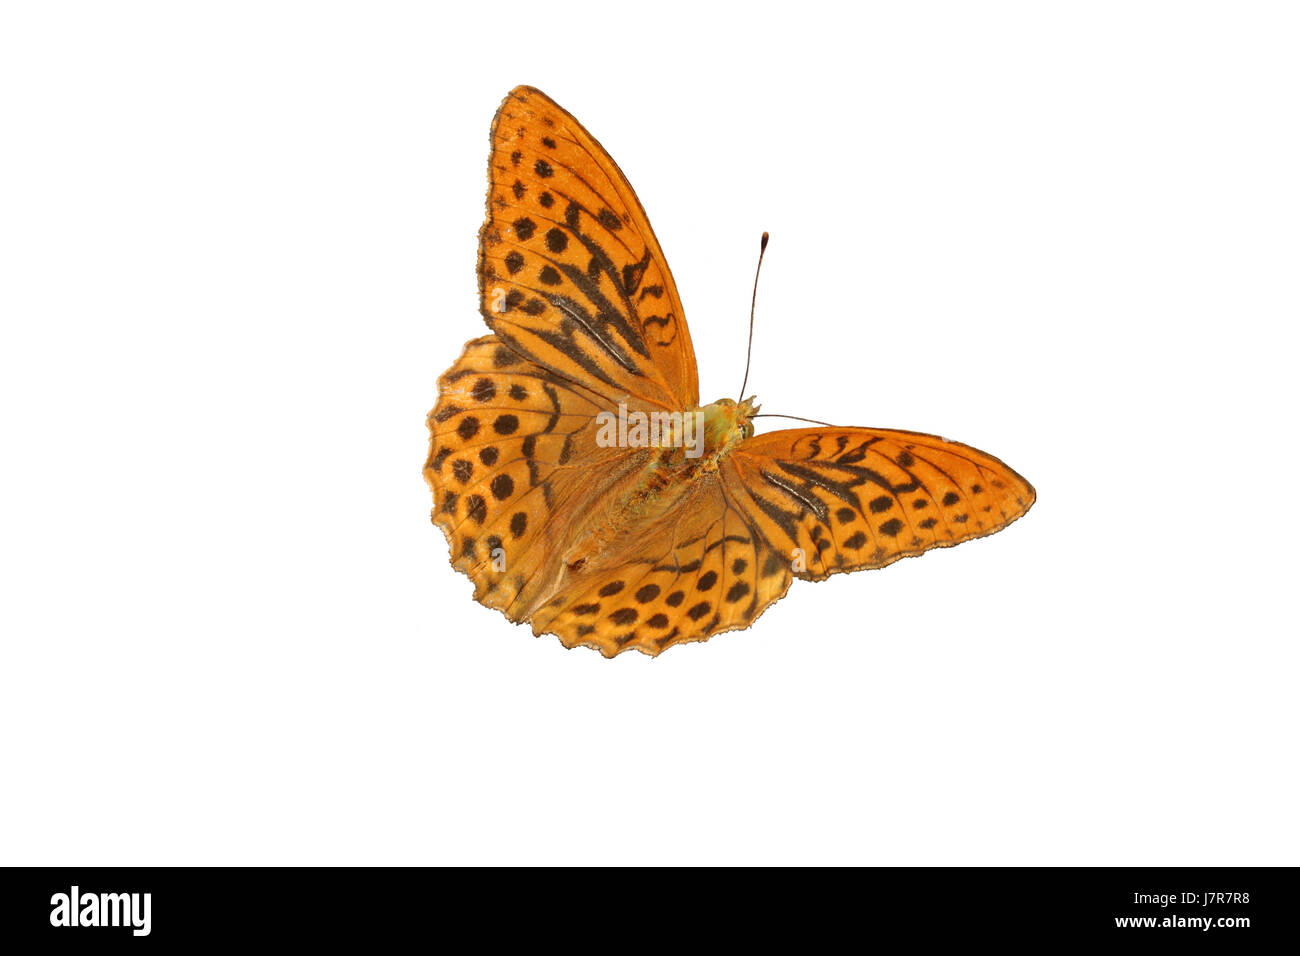 Isolato di farfalla insetto moth macro close-up di ammissione macro vista ravvicinata Foto Stock